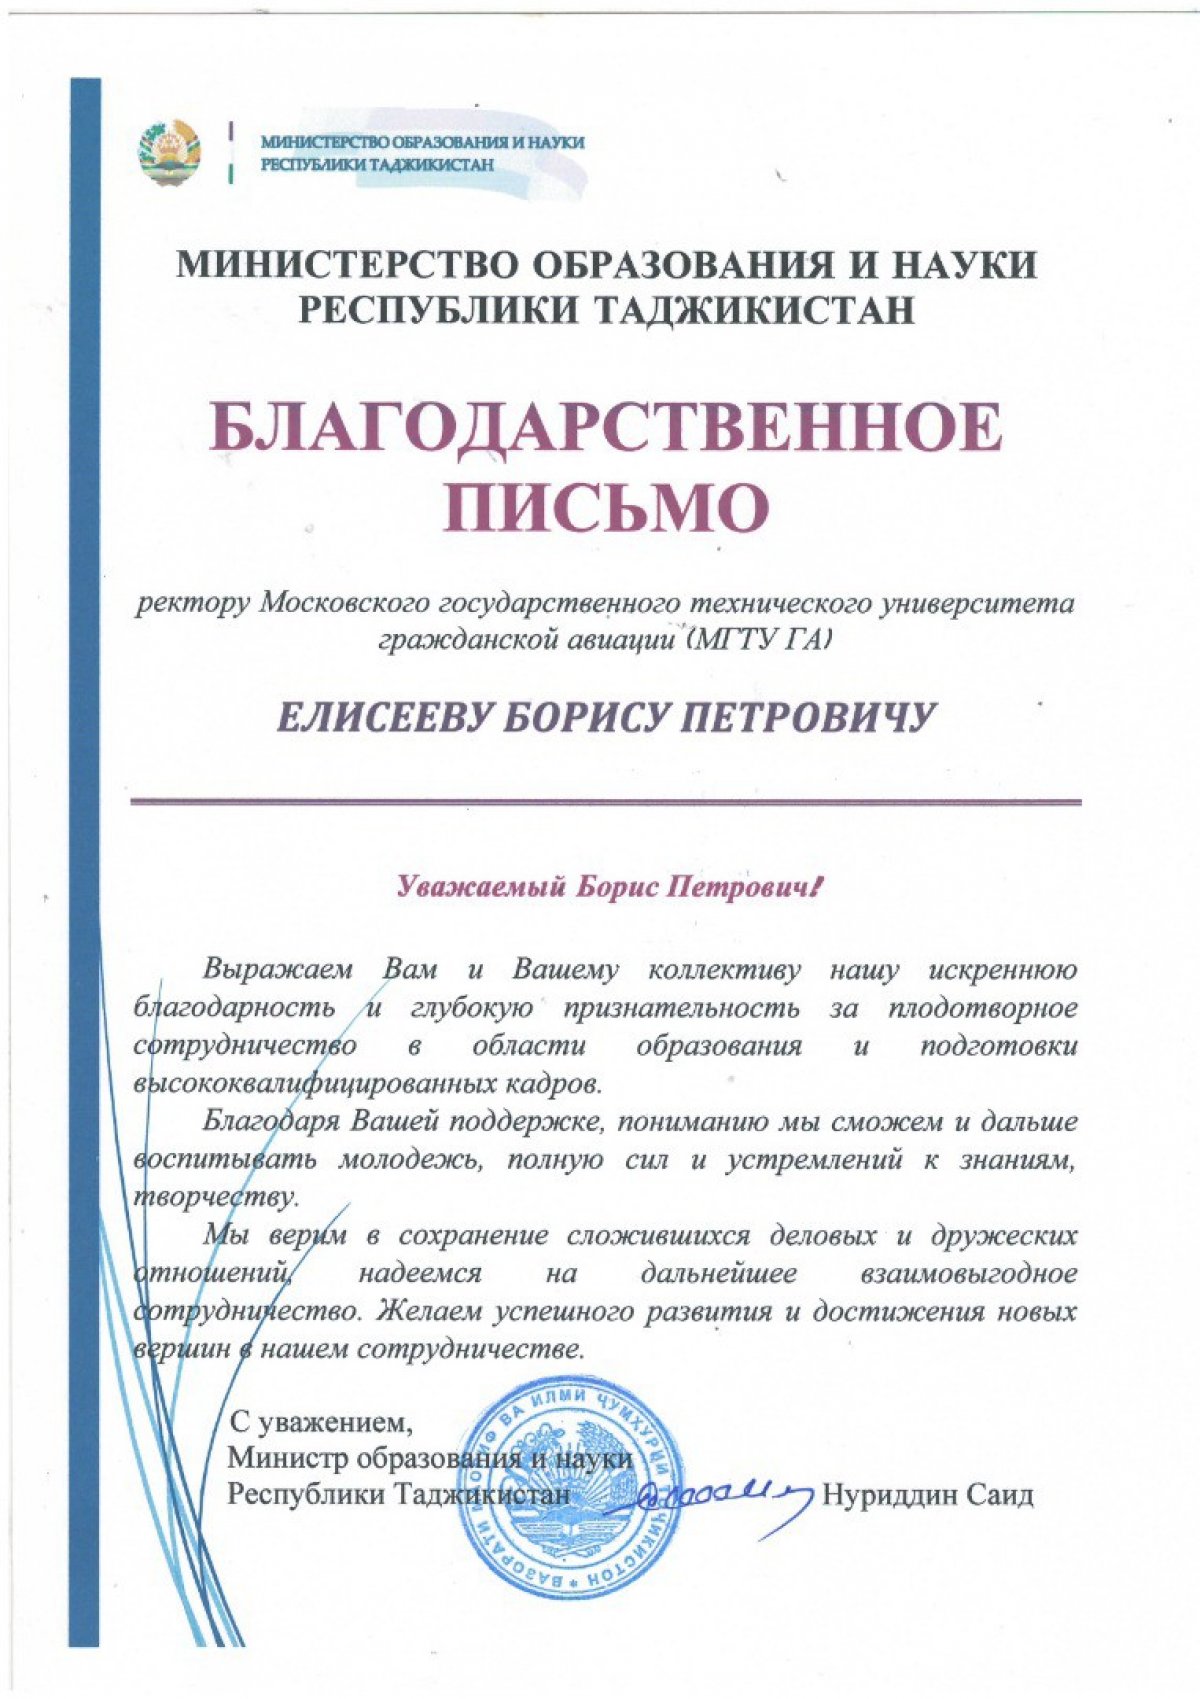 Министерство образования и науки Республики Таджикистан выражает благодарность ректору МГТУ ГА Борису Елисееву за плодотворное сотрудничество!